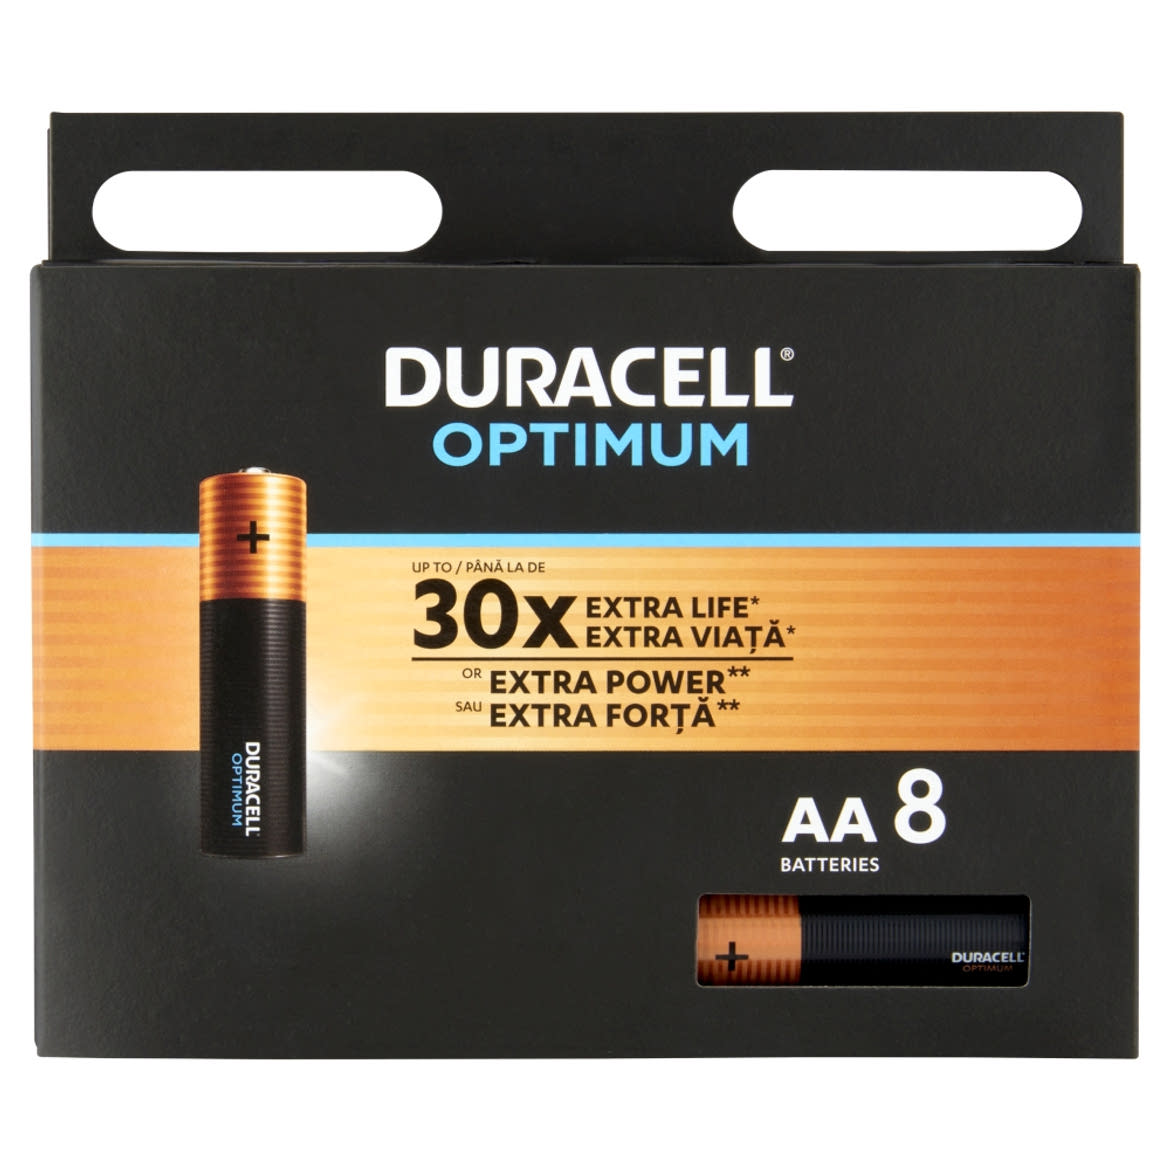 Duracell Optimum Extra Power AA alkáli elemek